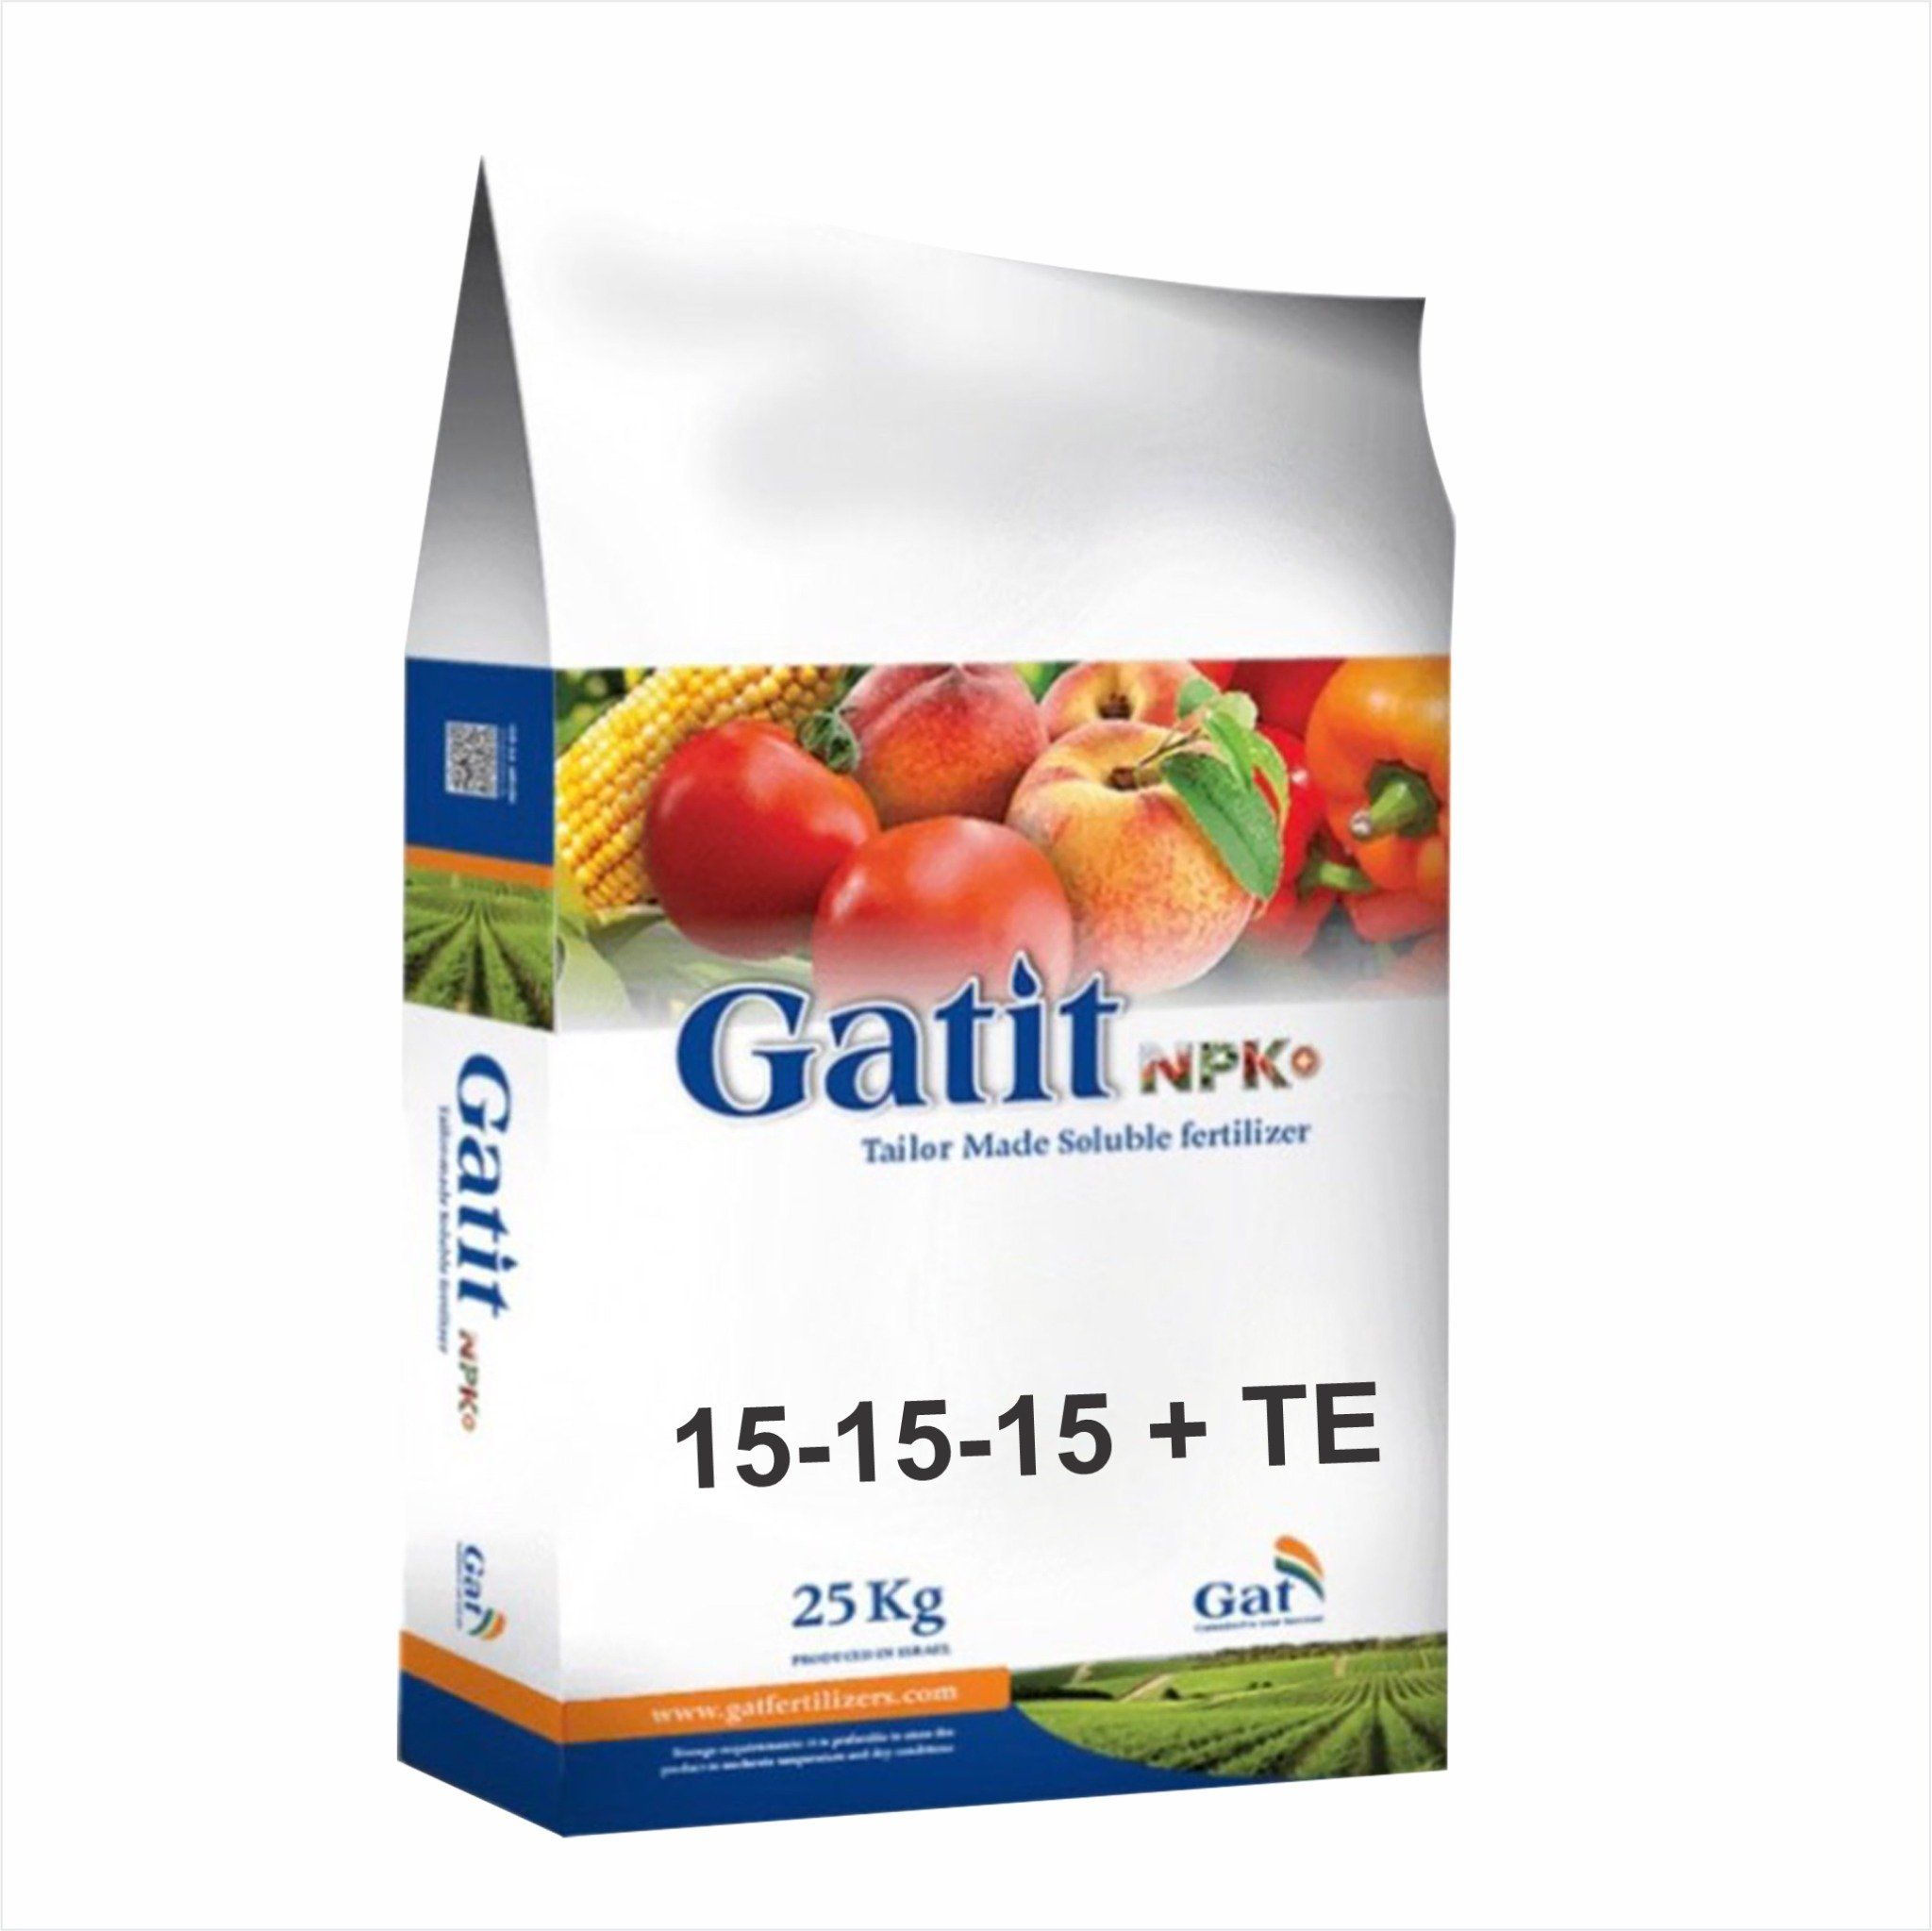  Dòng cân đối GATIT NPK 15-15-15 + TE (Gatit S) 